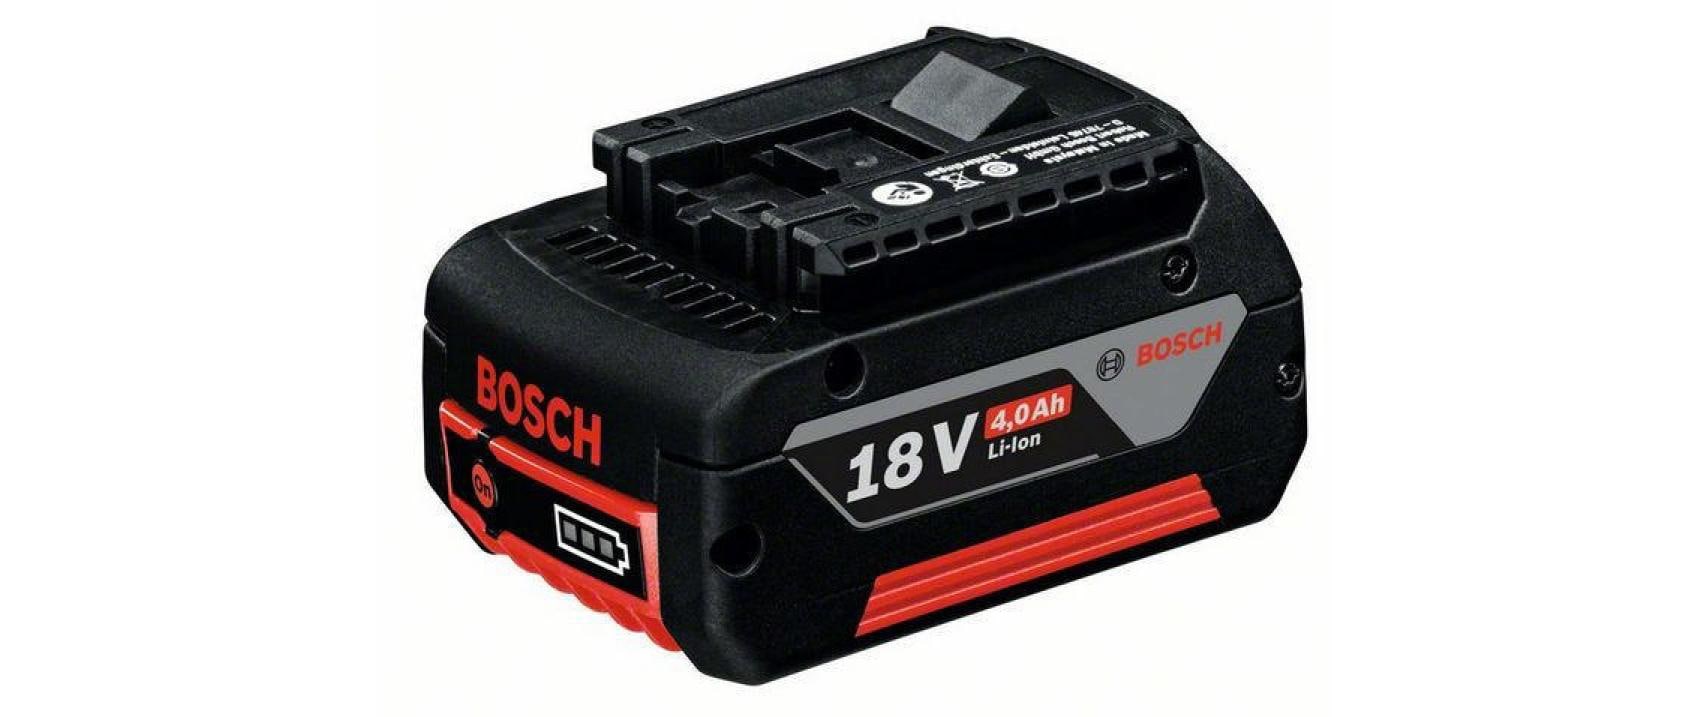 Bosch Professional Akku 18 V 4.0 Ah